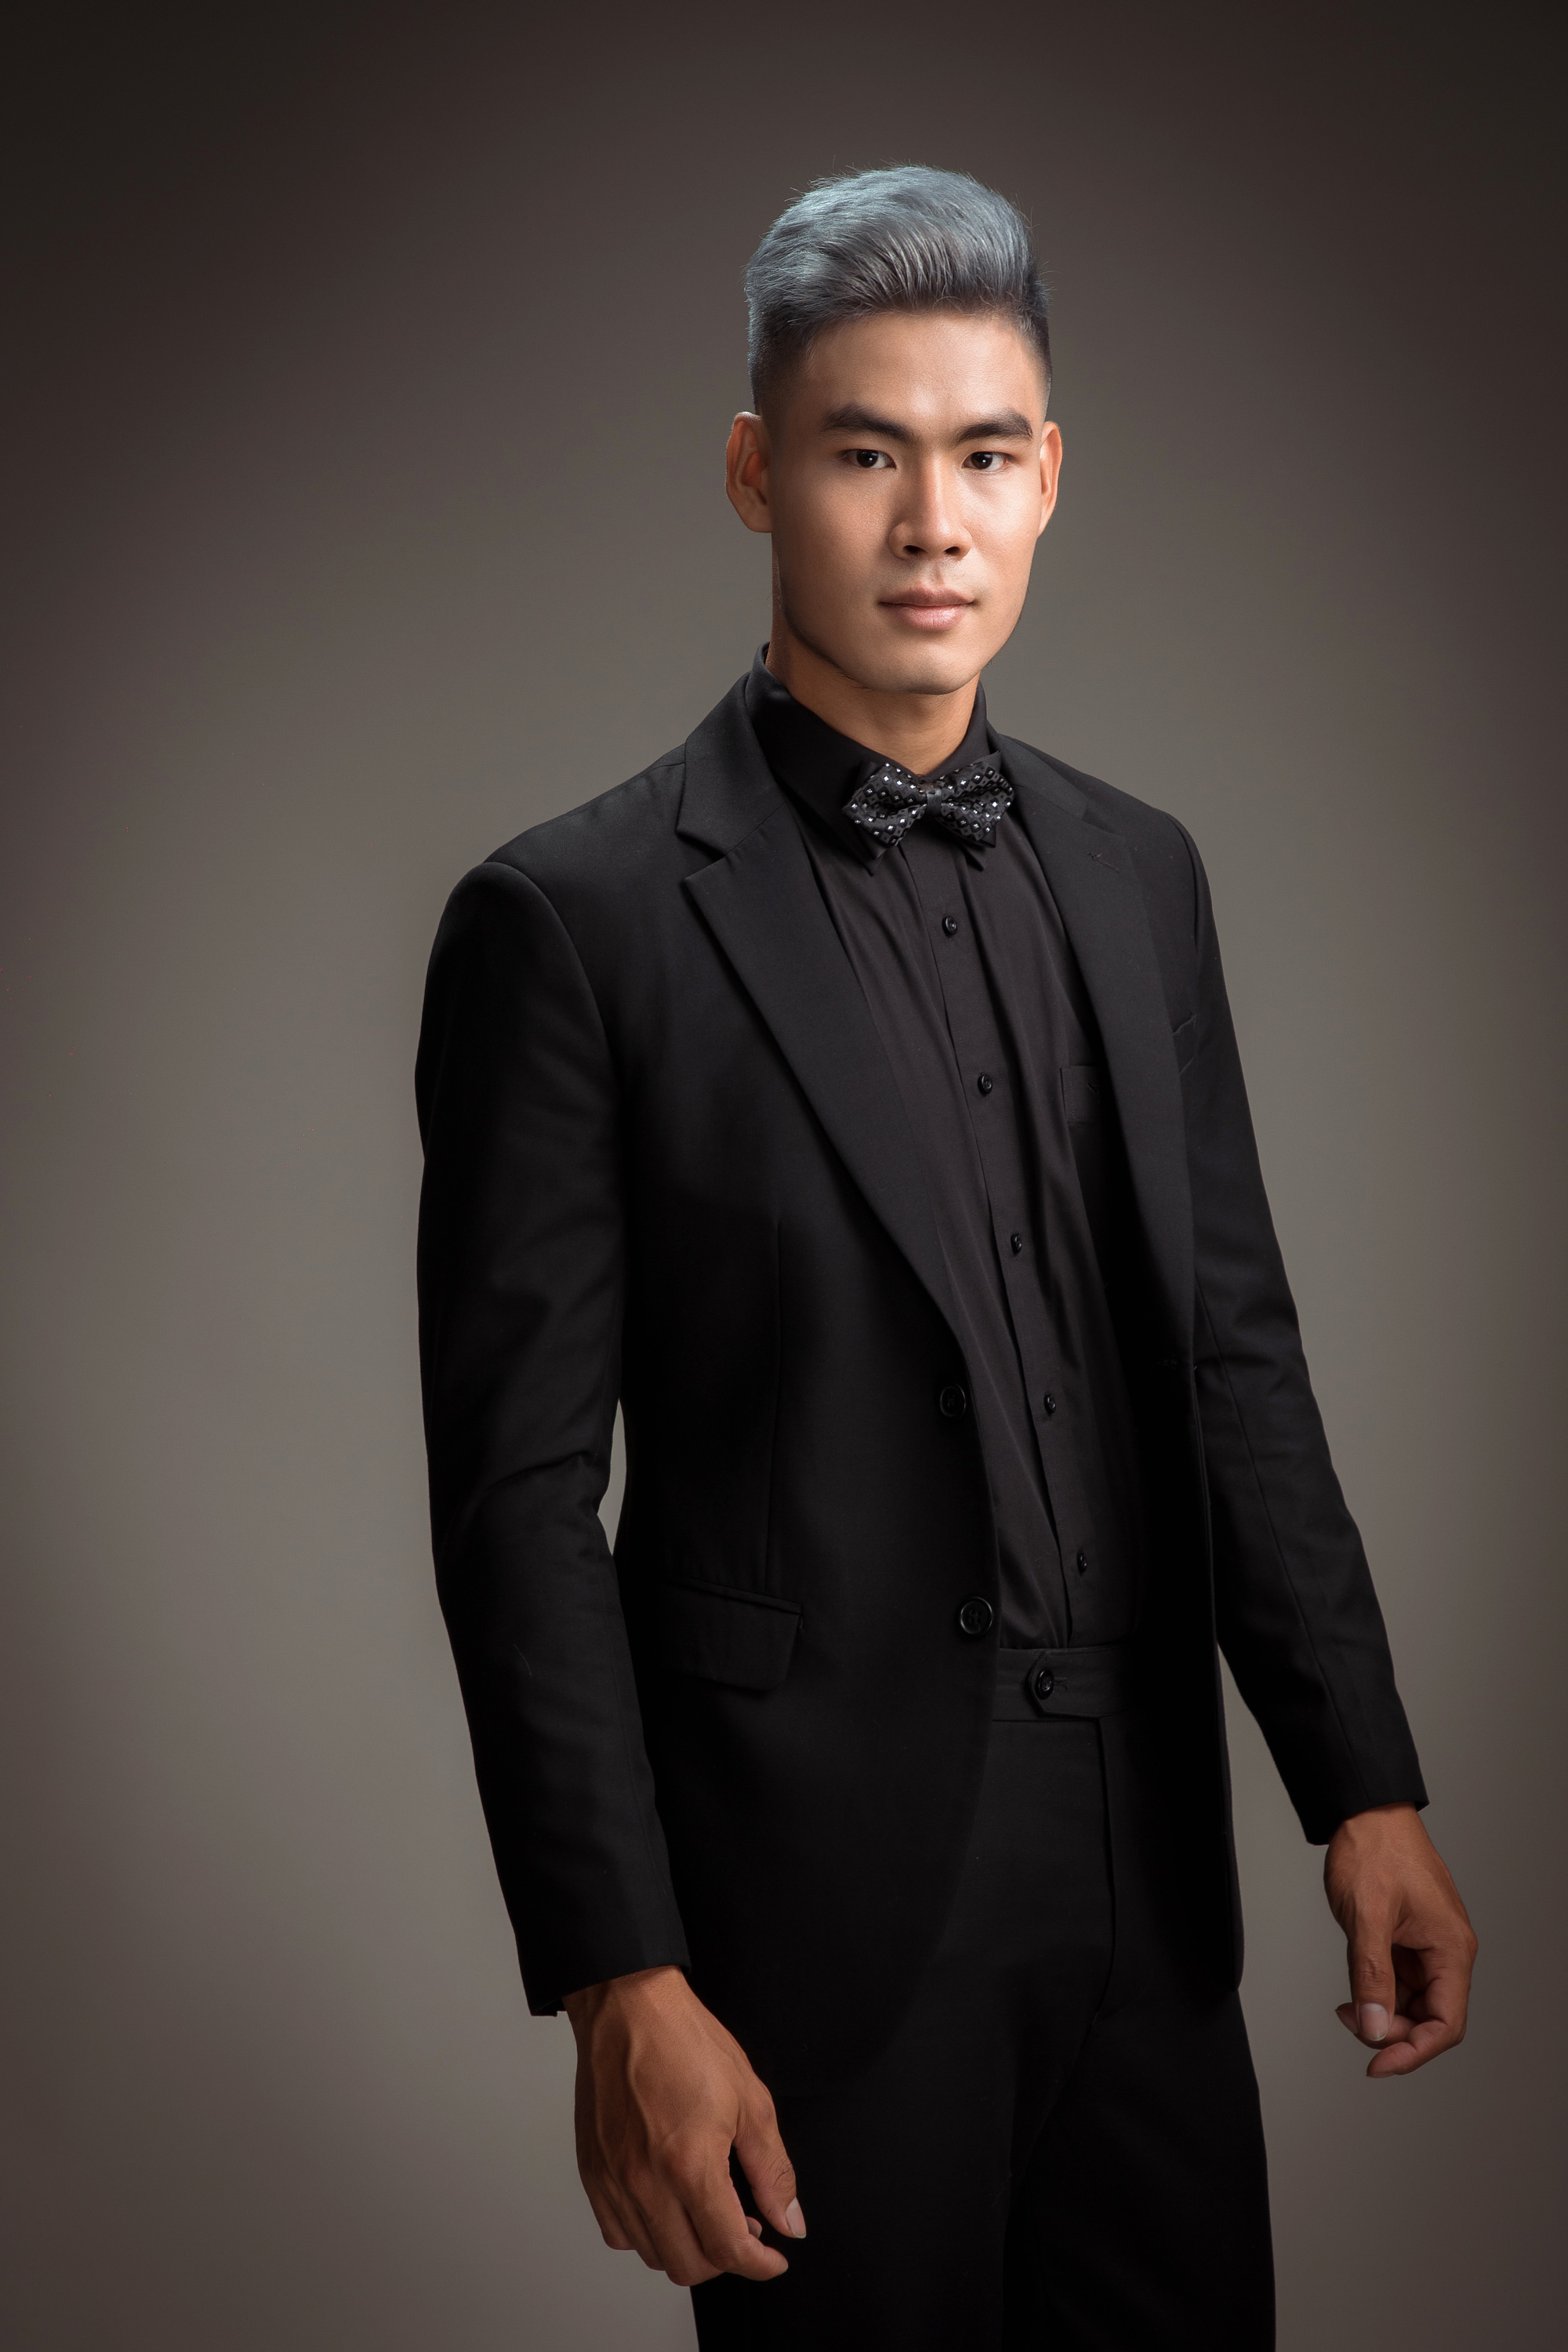 Đại diện Mister Global Việt Nam Danh Chiếu Linh tung ảnh lịch lãm với vest  - Ảnh 7.